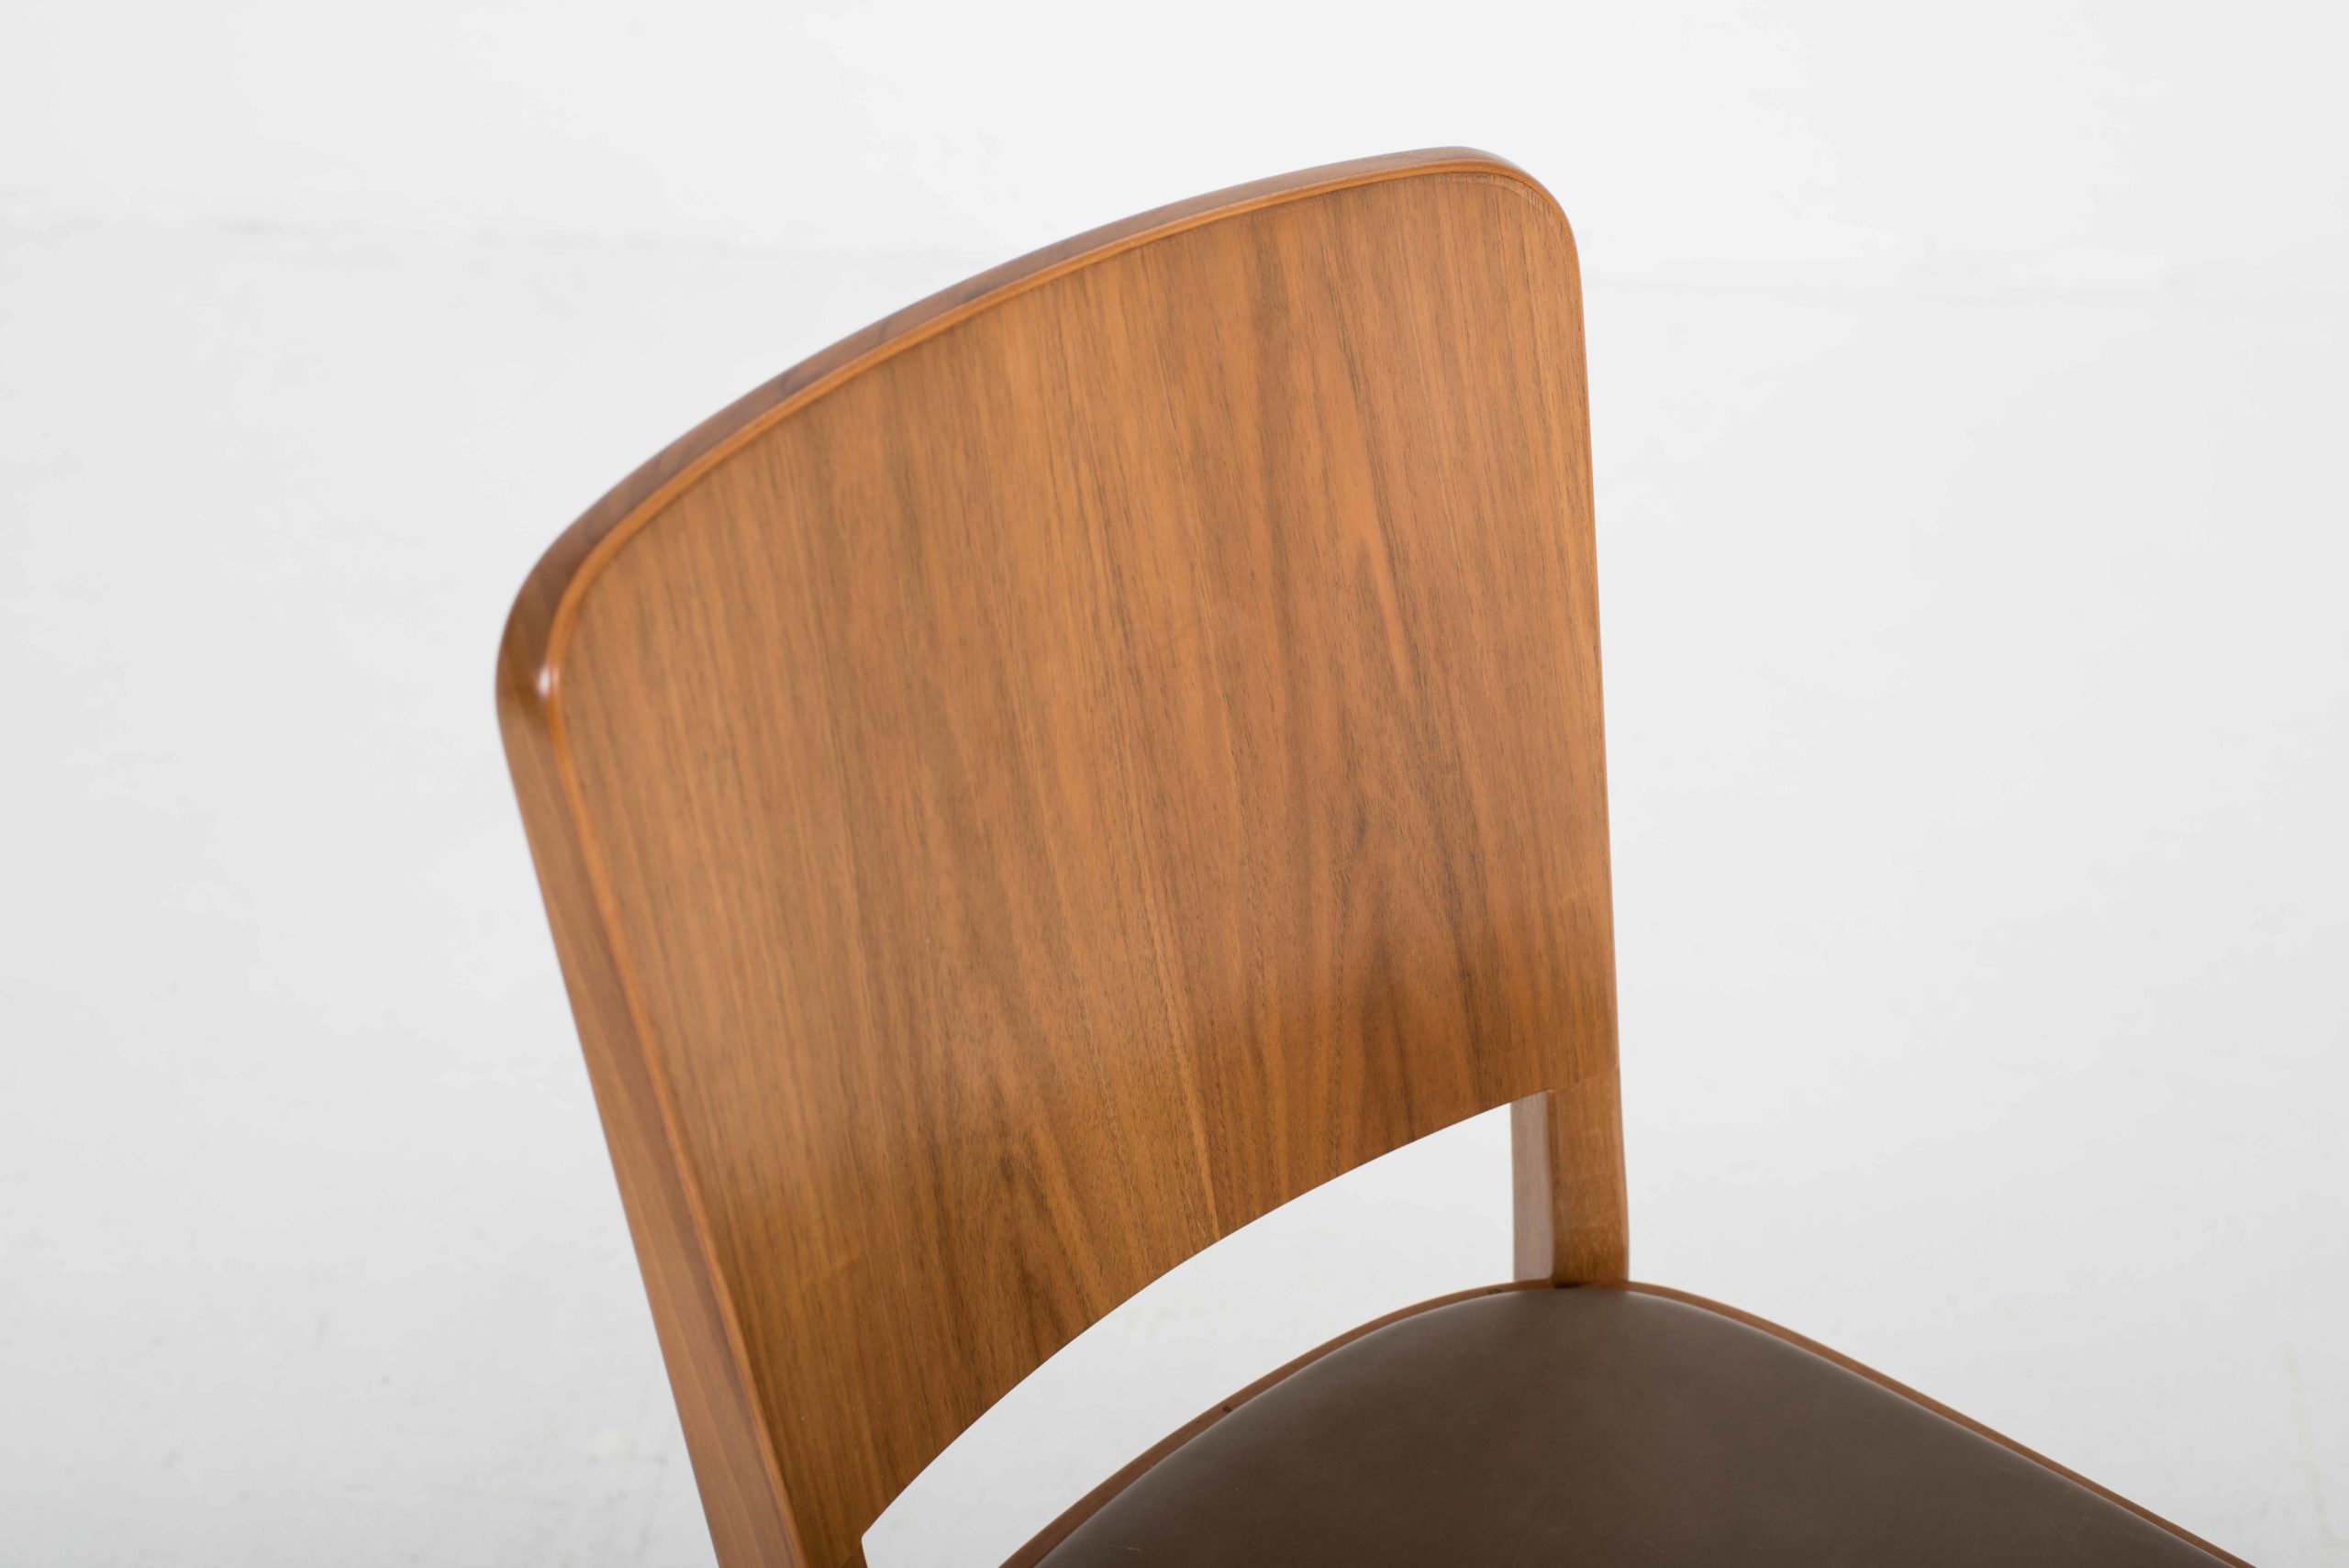 Horgenglarus 1-793 Stühle von Max Ernst Haefeli, im Zweierset-6